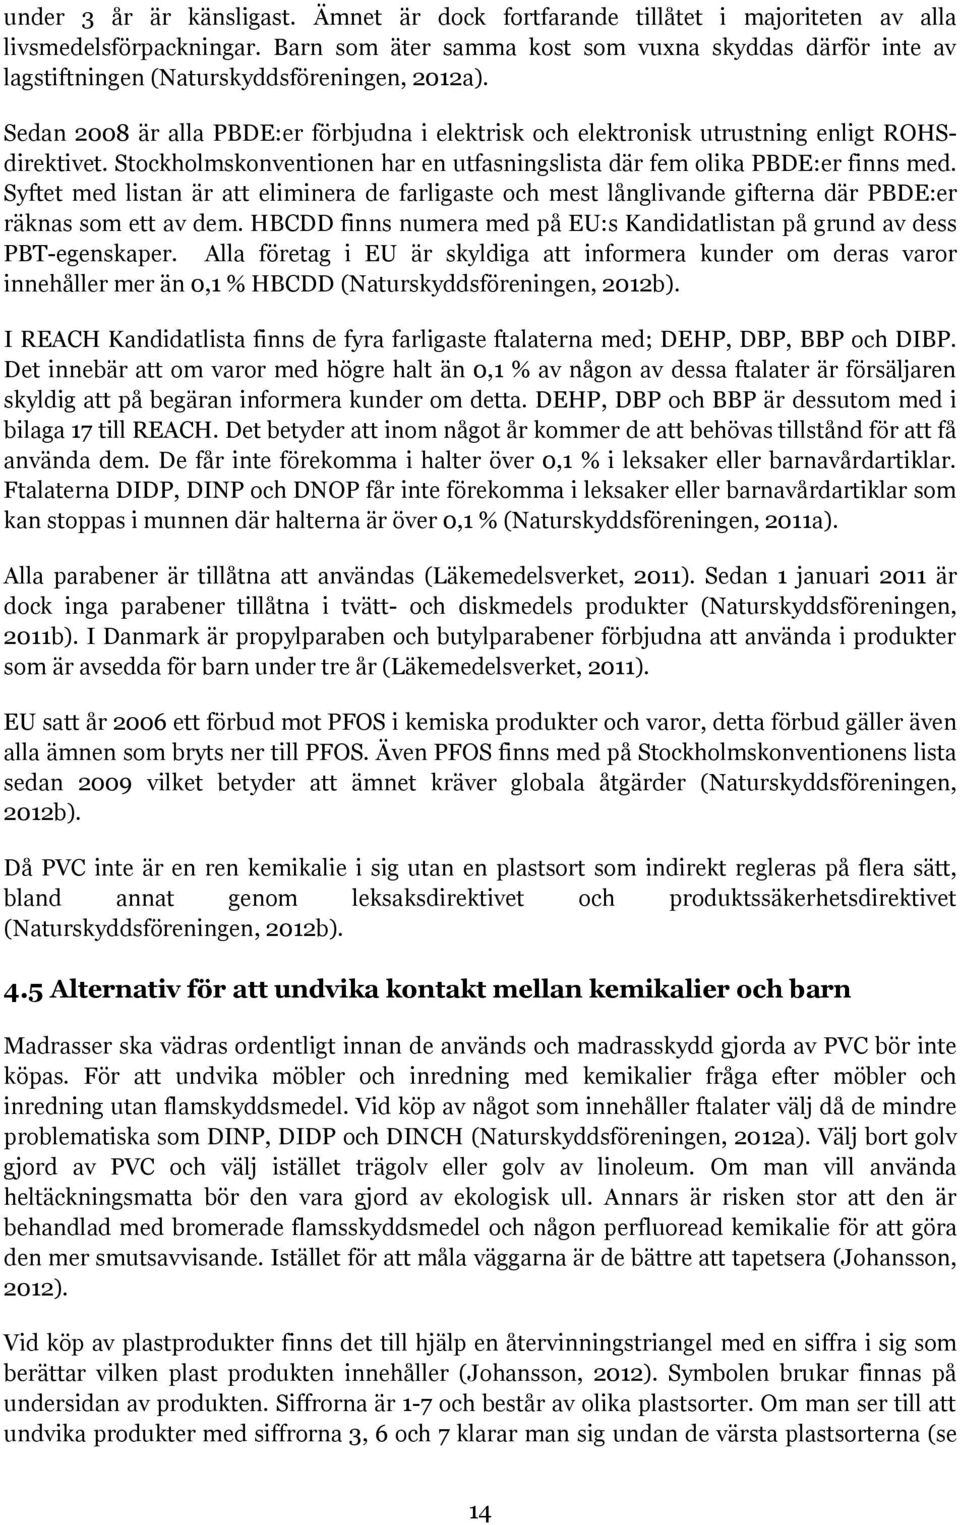 Sedan 2008 är alla PBDE:er förbjudna i elektrisk och elektronisk utrustning enligt ROHSdirektivet. Stockholmskonventionen har en utfasningslista där fem olika PBDE:er finns med.